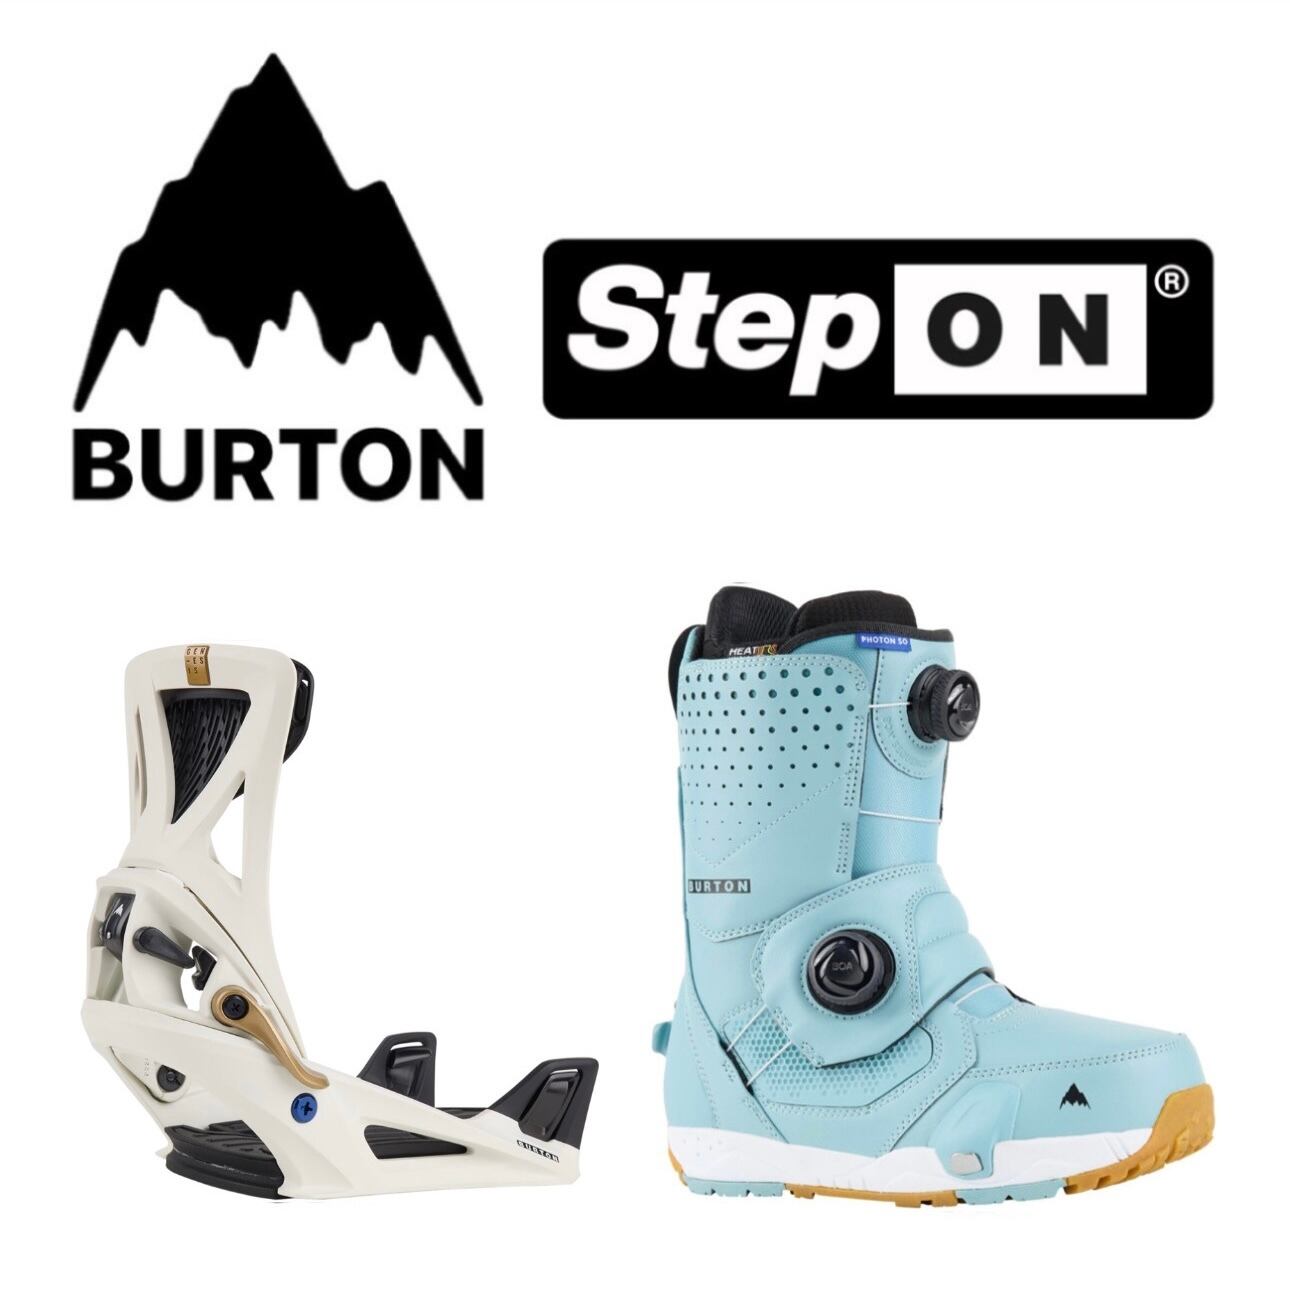 Burton バートン Step On ステップオン Genesis ジェネシス Photon